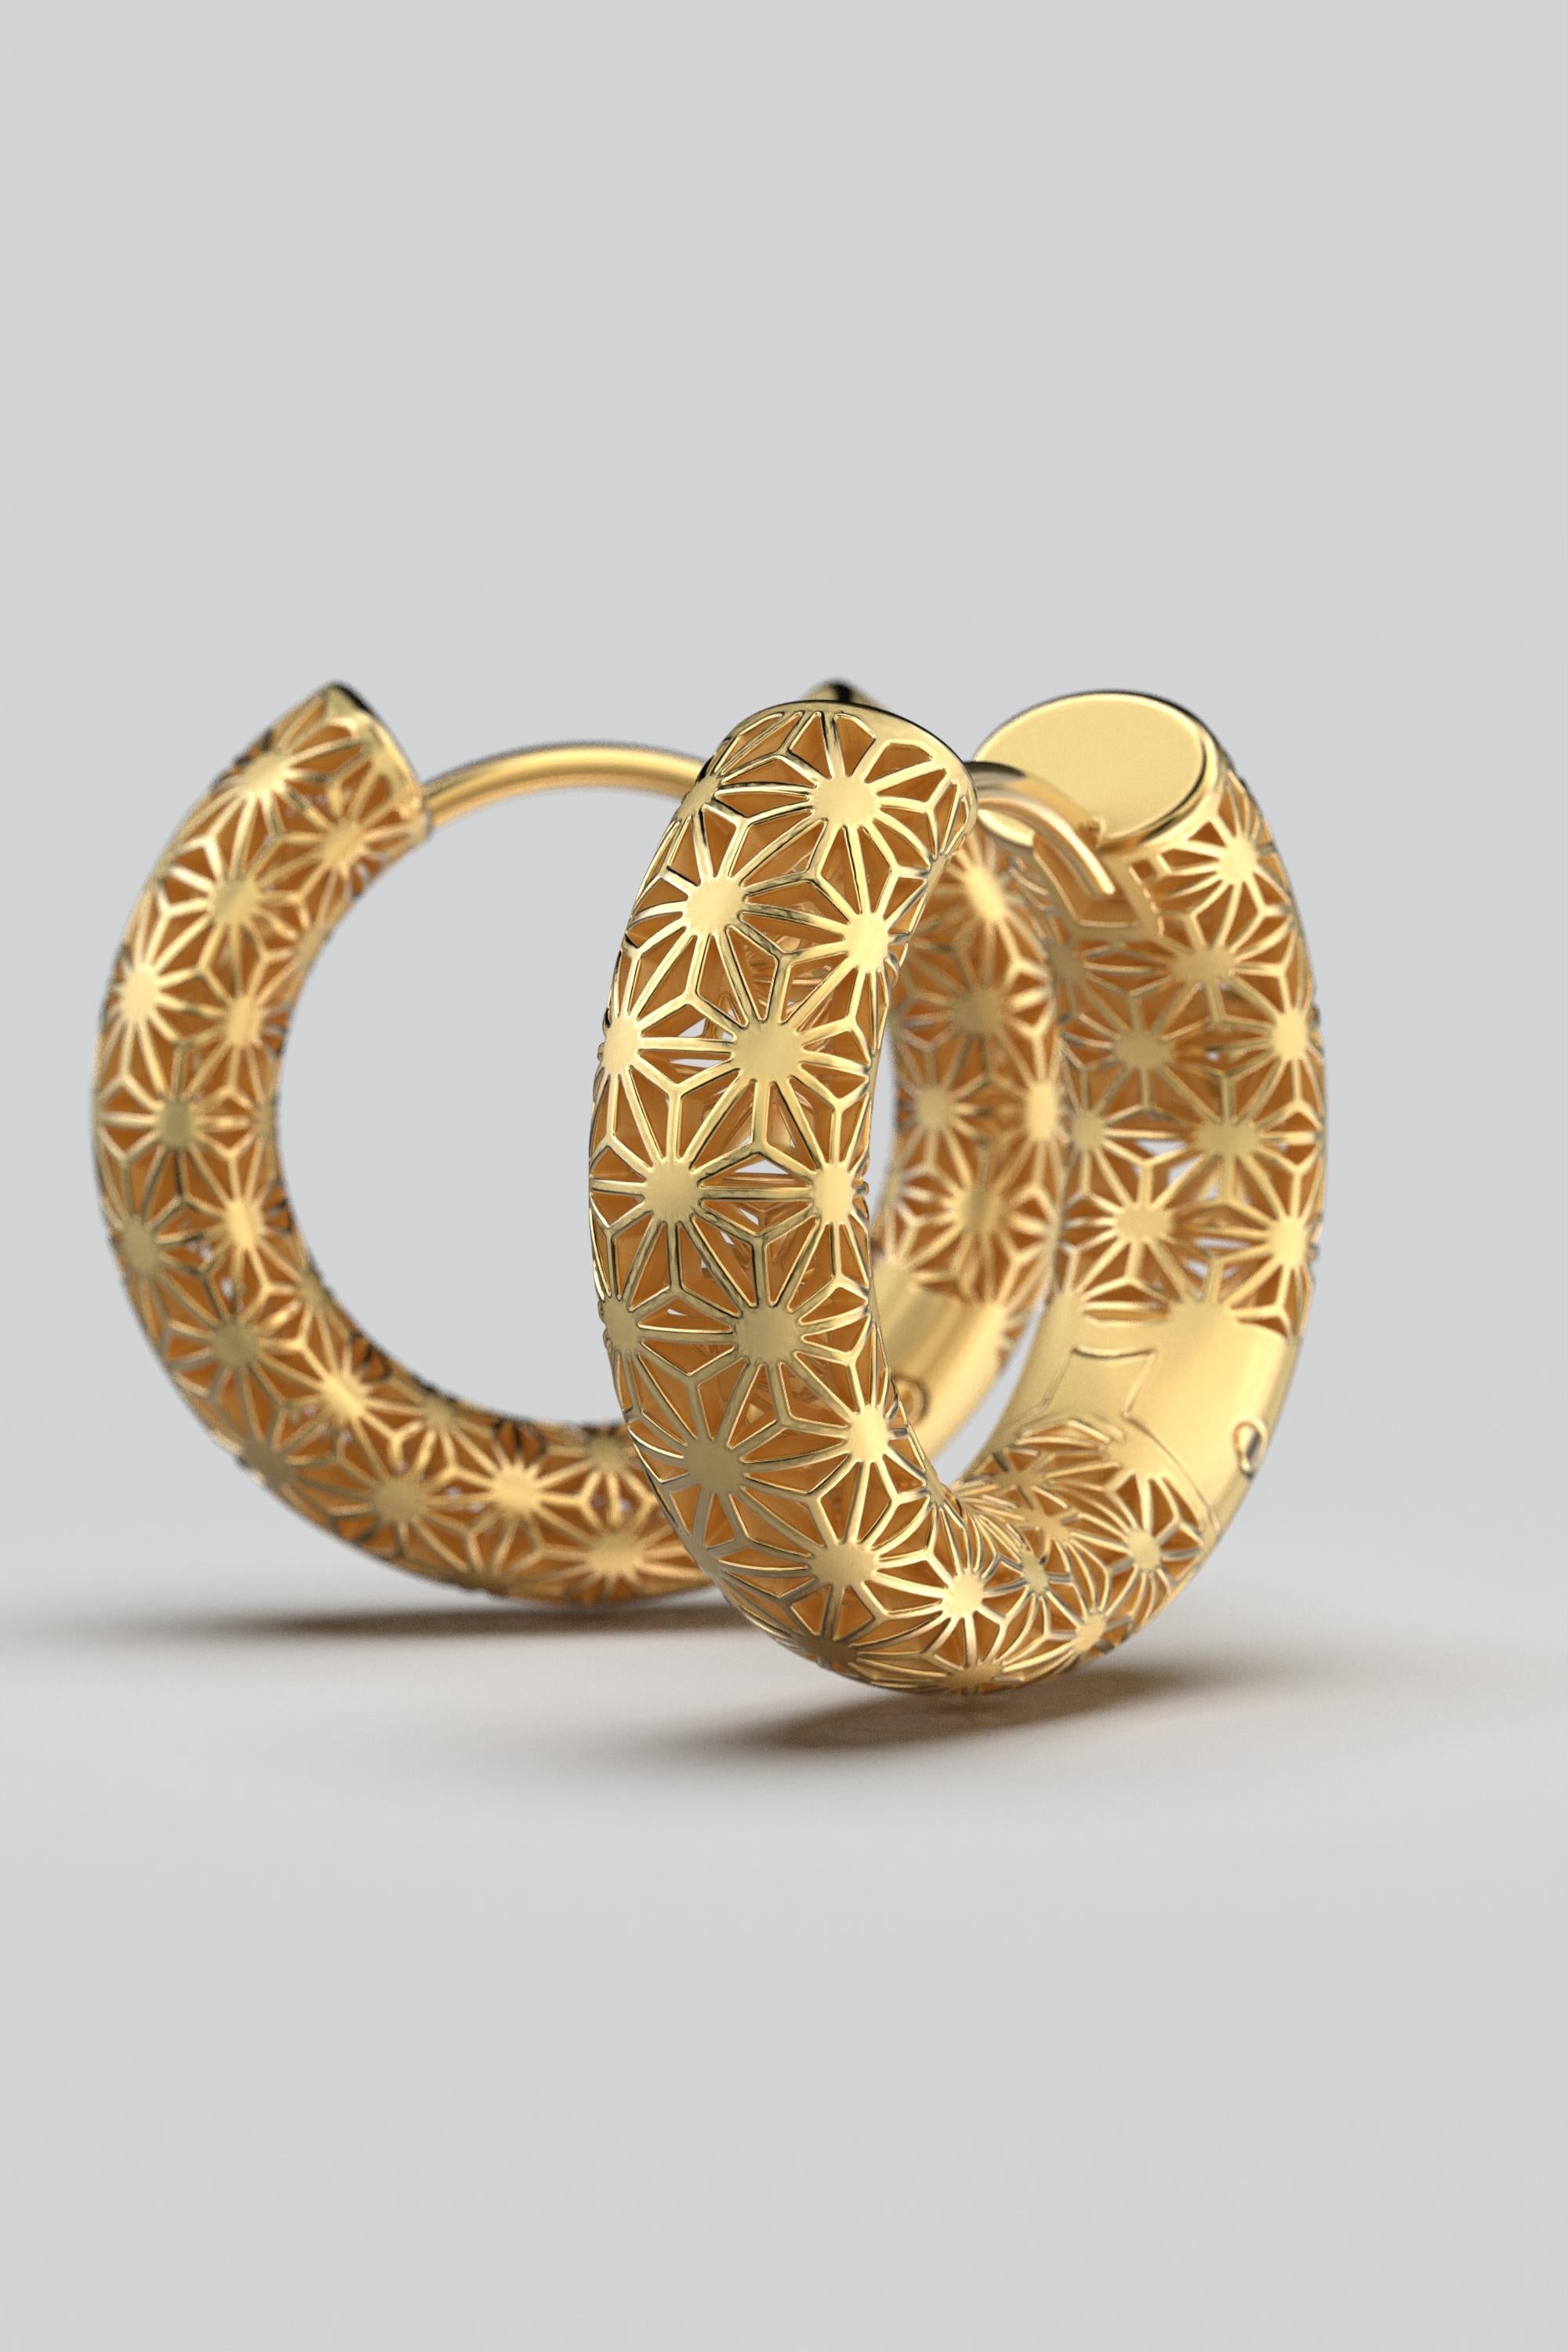  Oltremare Gioielli 18K Italian Gold Hoop Earrings - Sashiko Japanese Pattern  For Sale 5